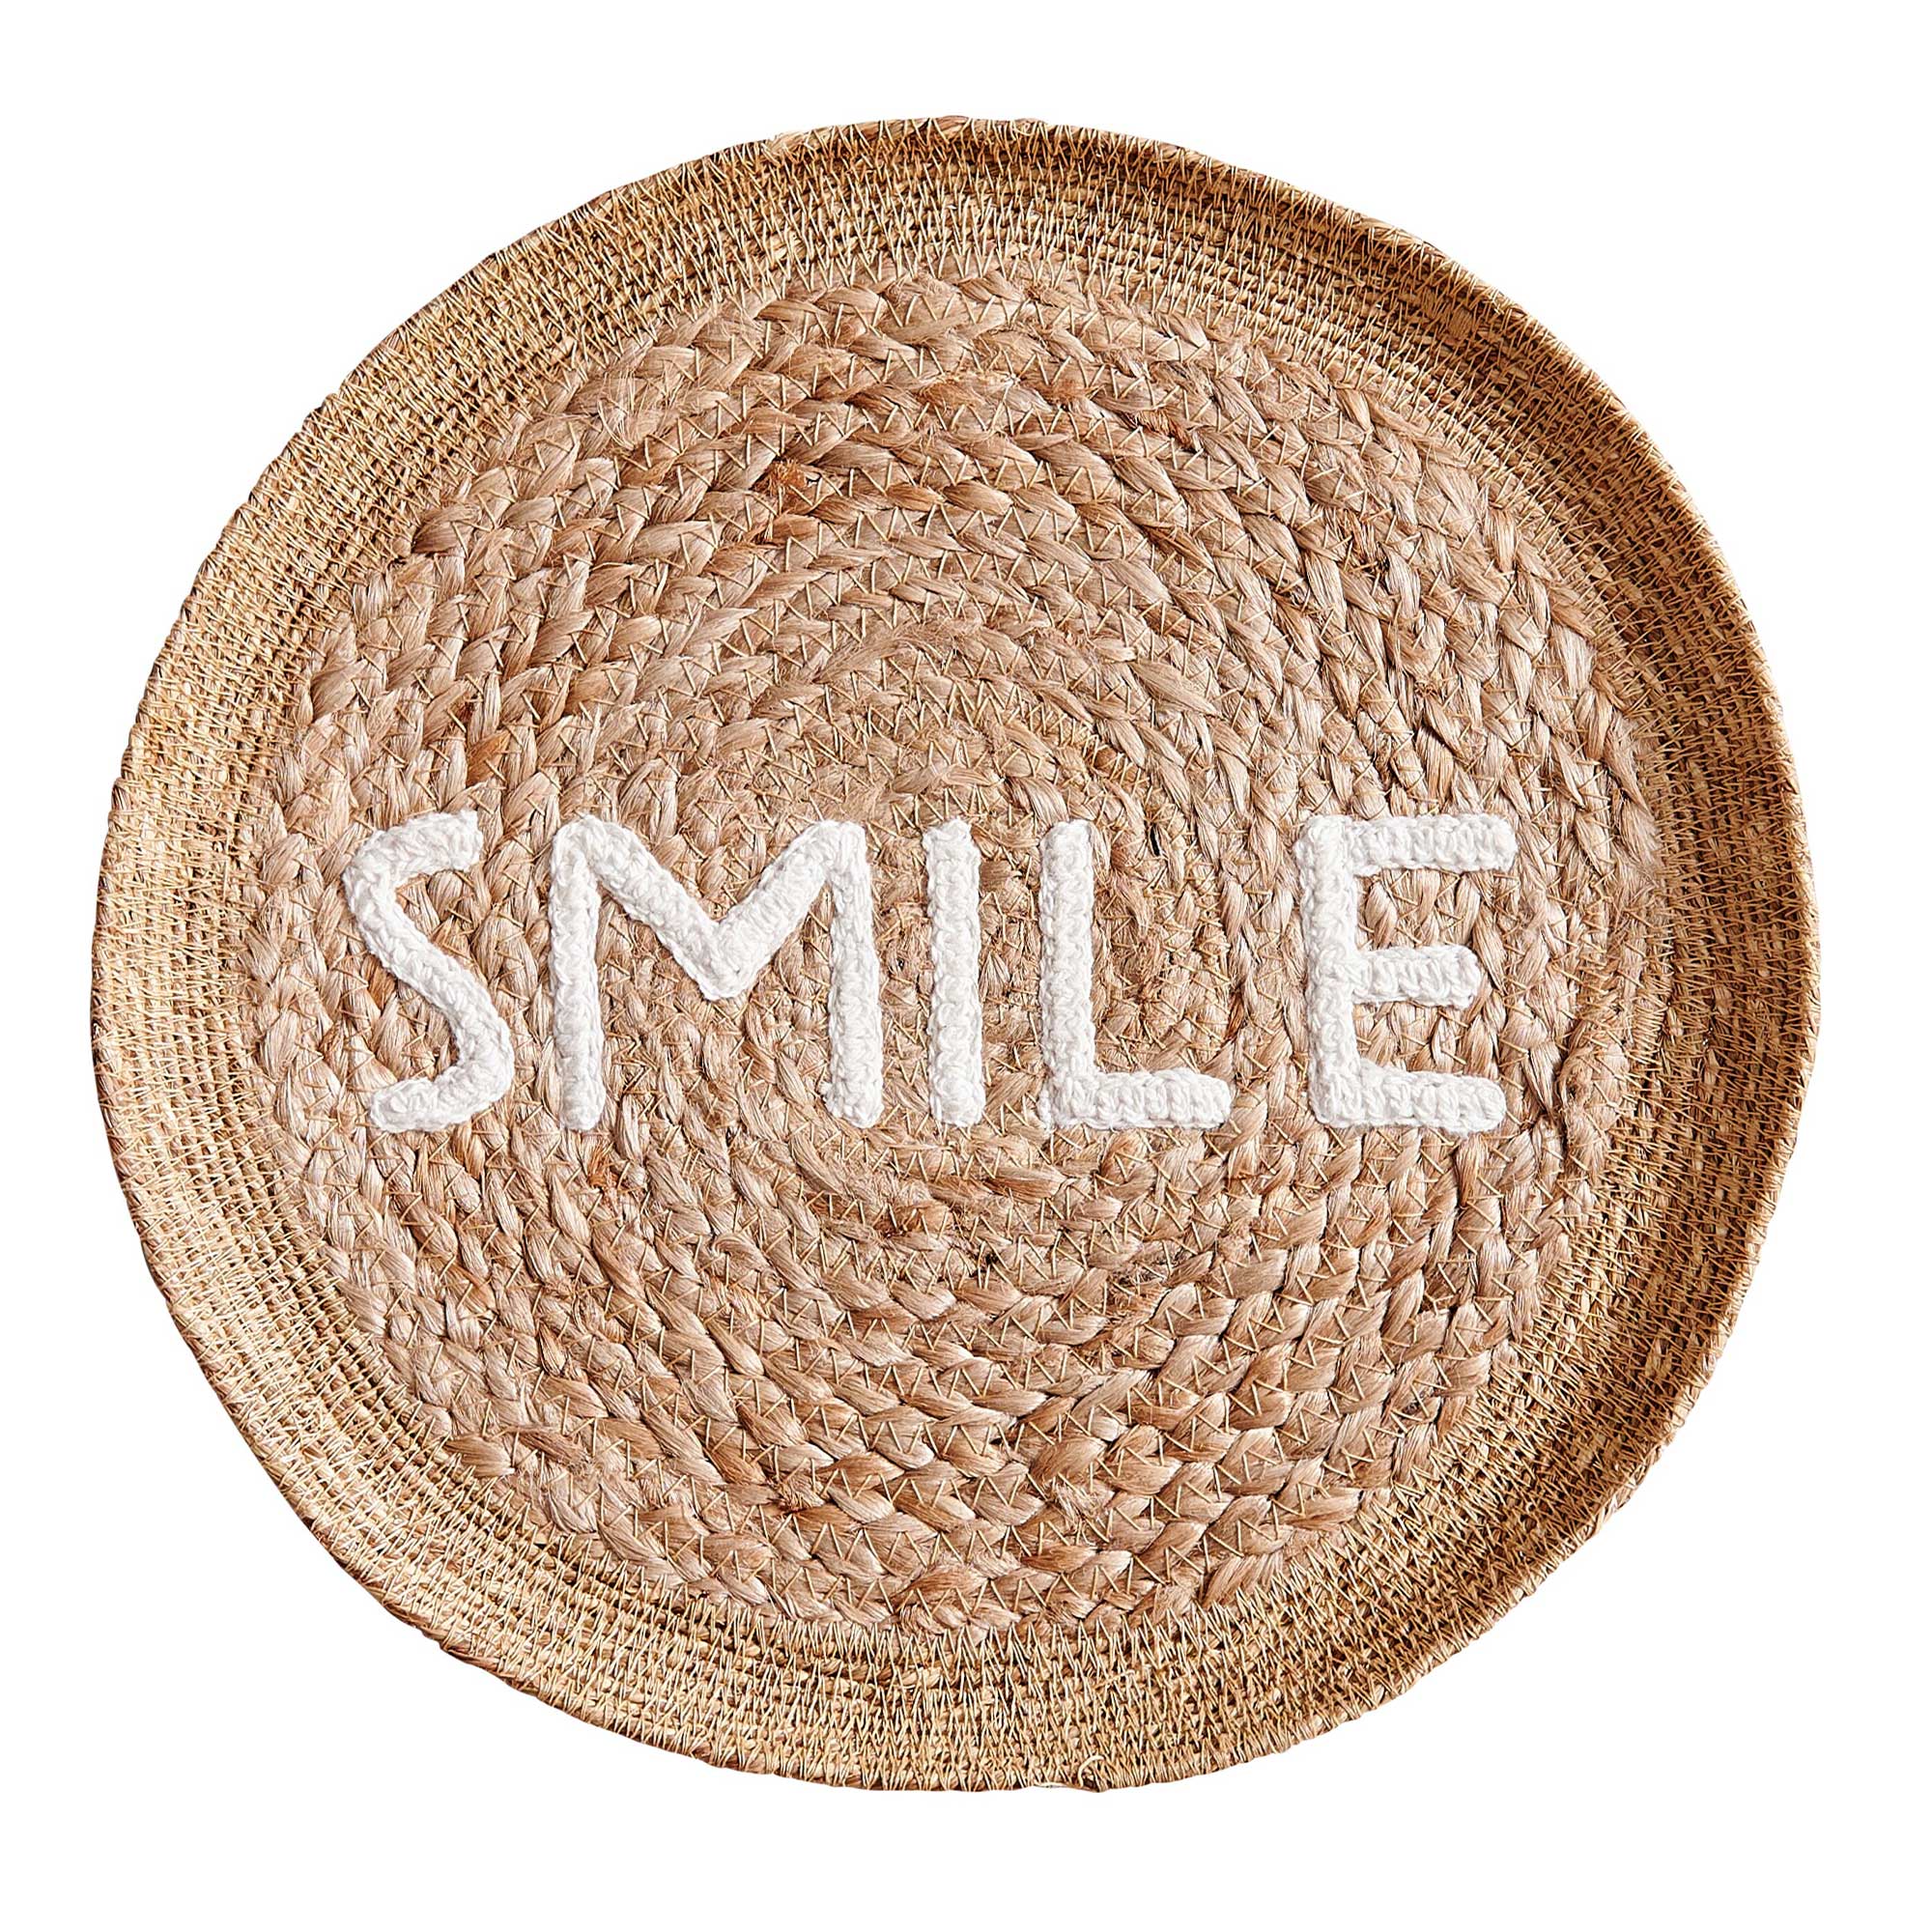 Tablett "SMILE" aus Korbgeflecht